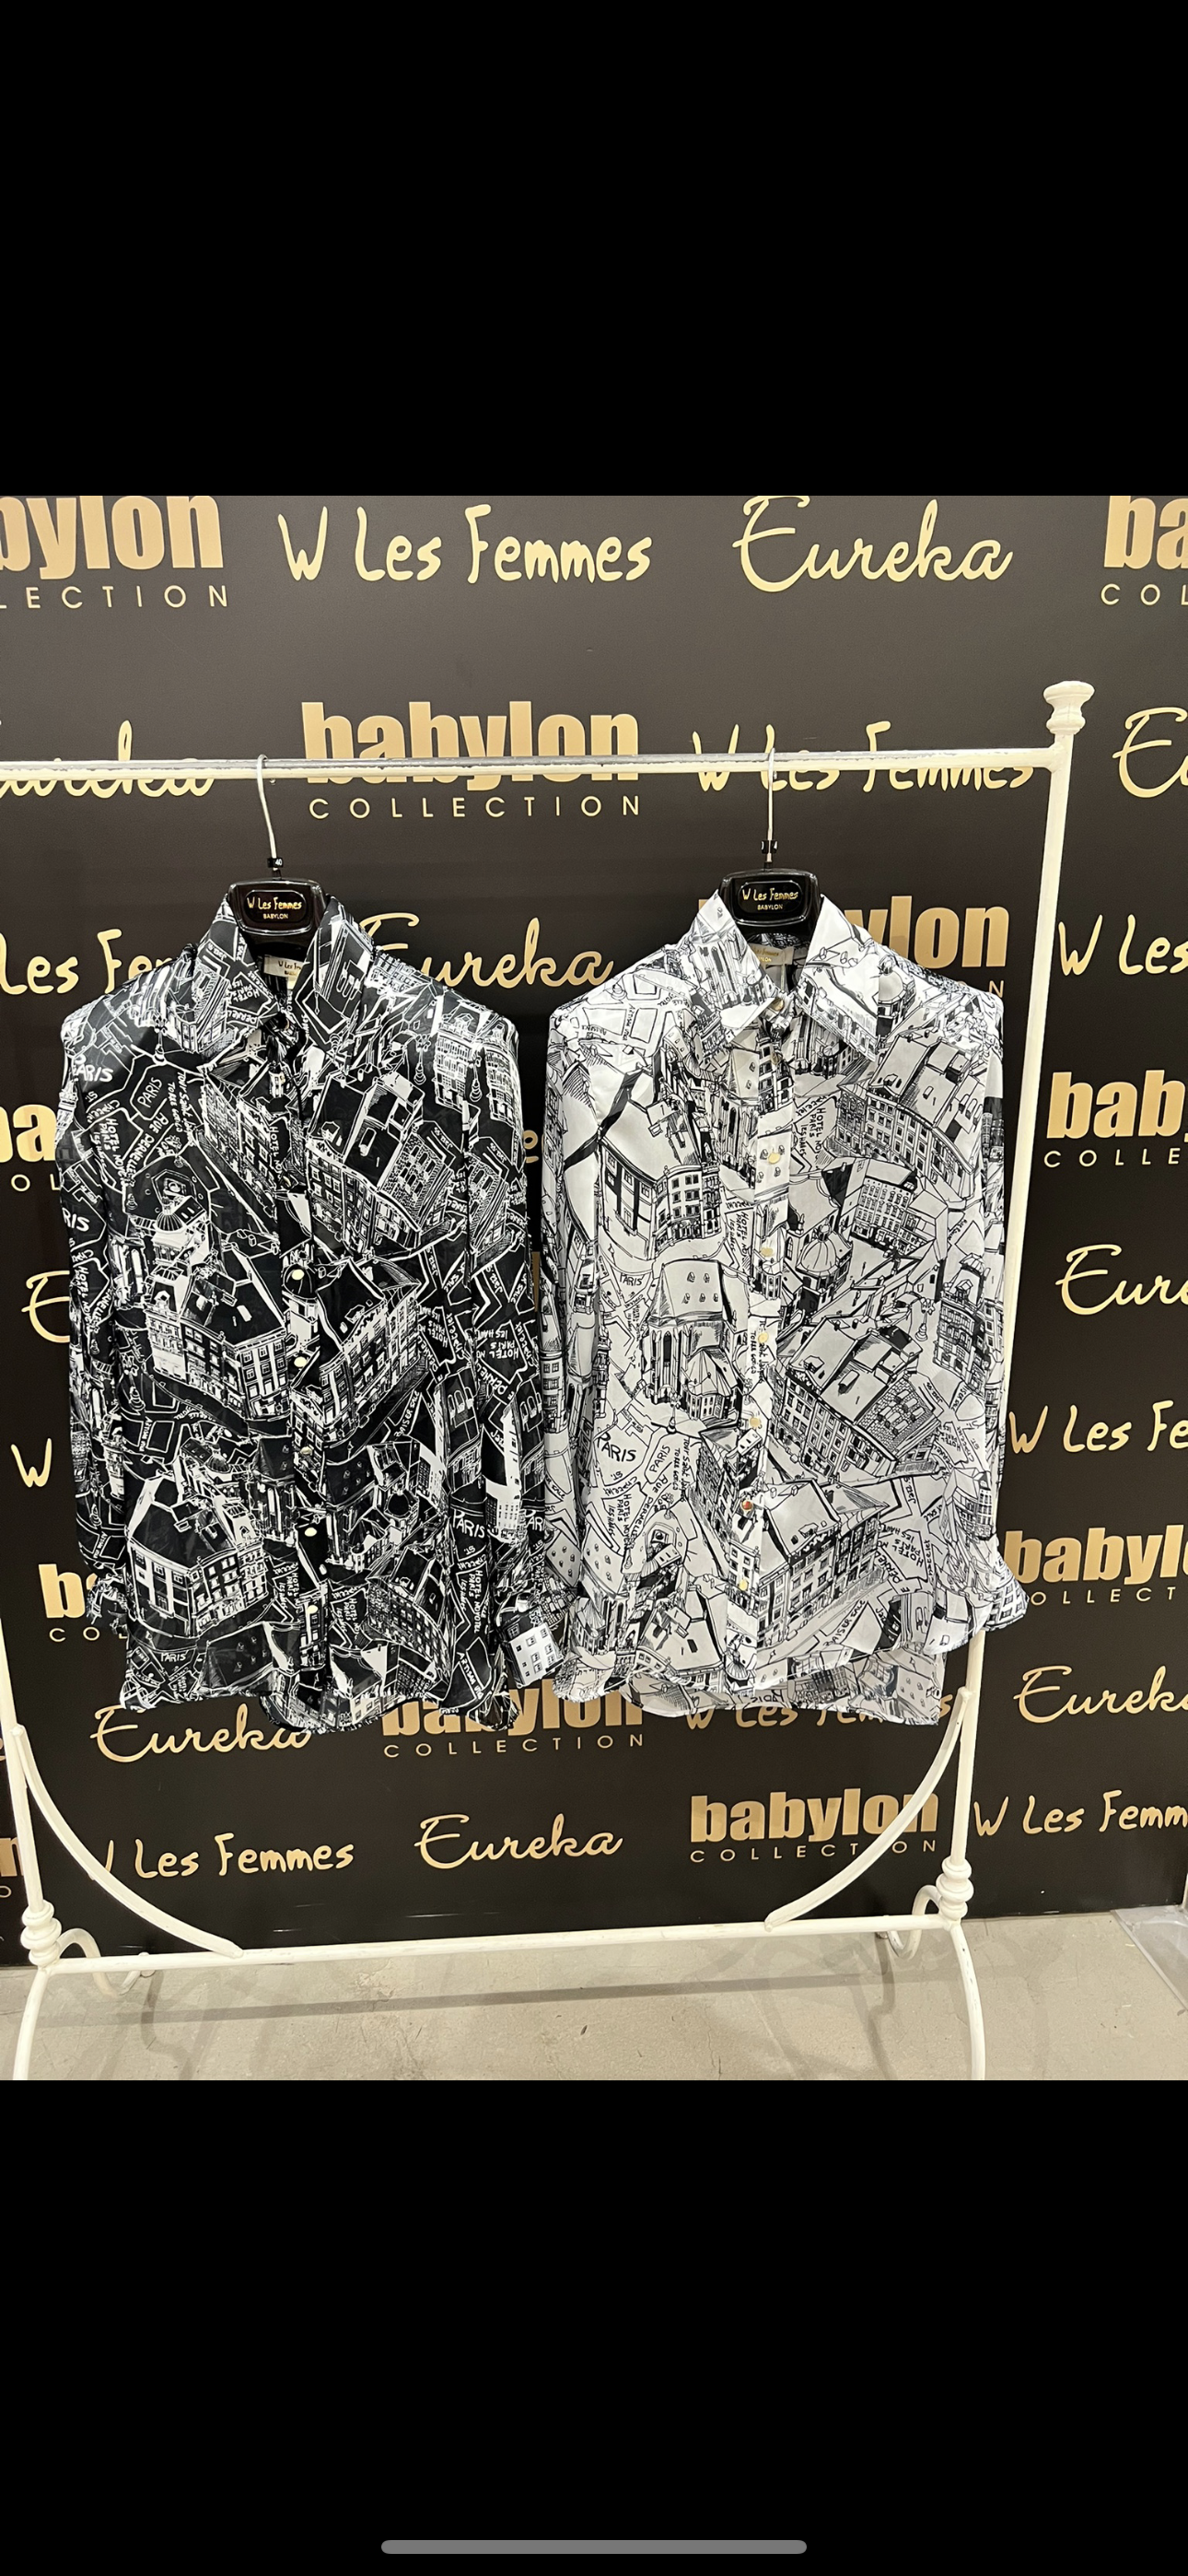 Babylon korte/blouse set